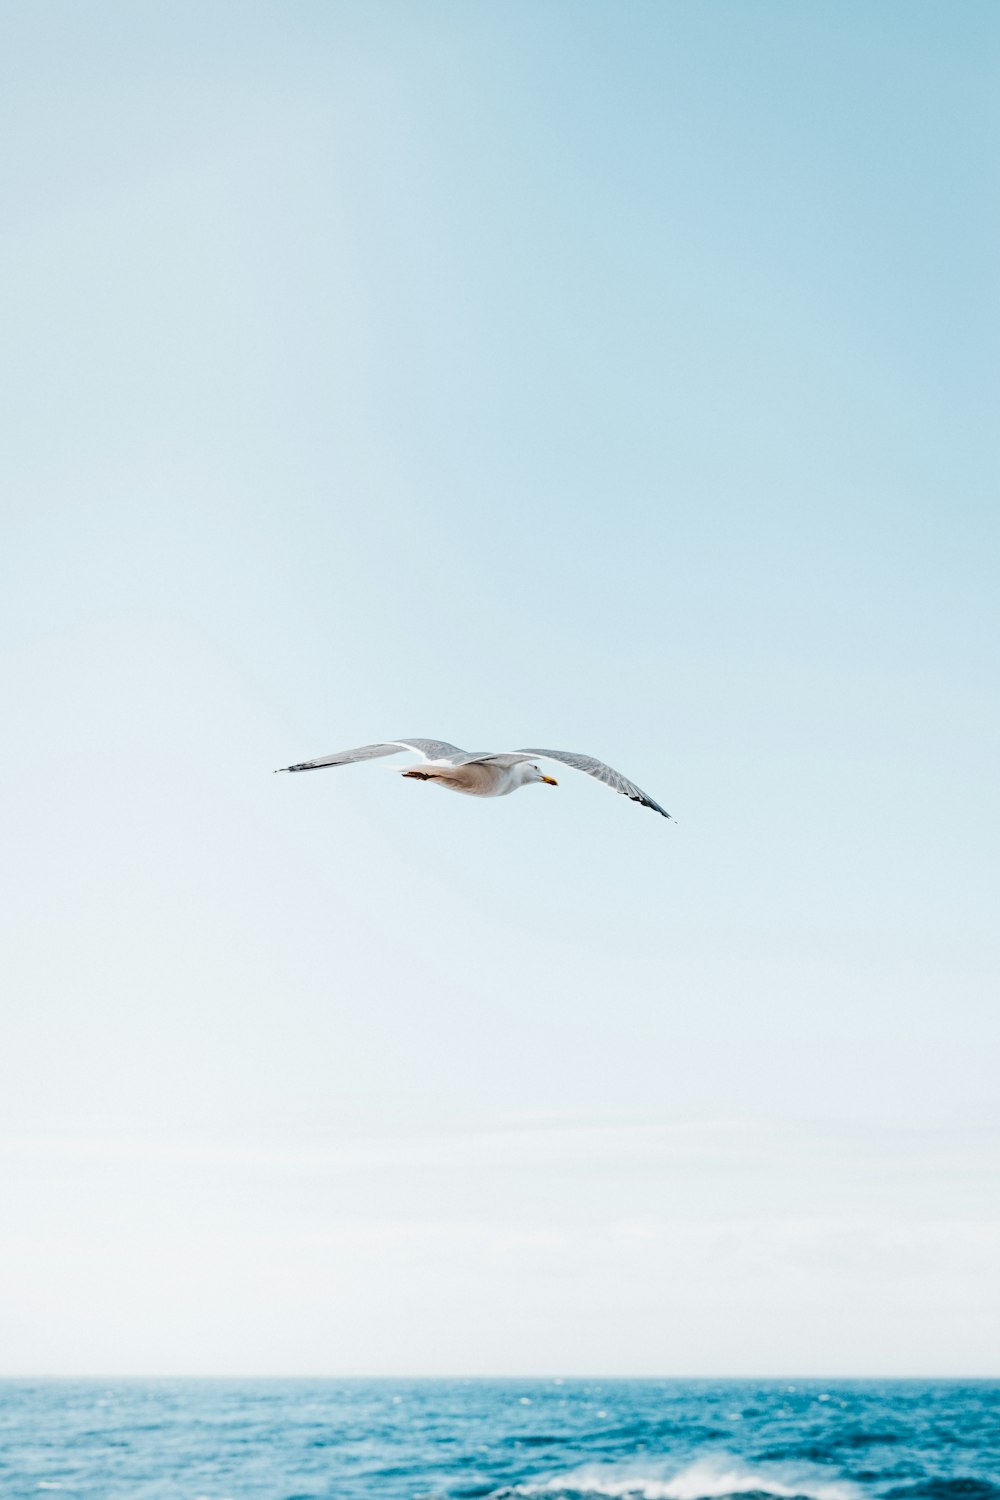 Photographie en accéléré de goéland en vol au-dessus de l’océan bleu